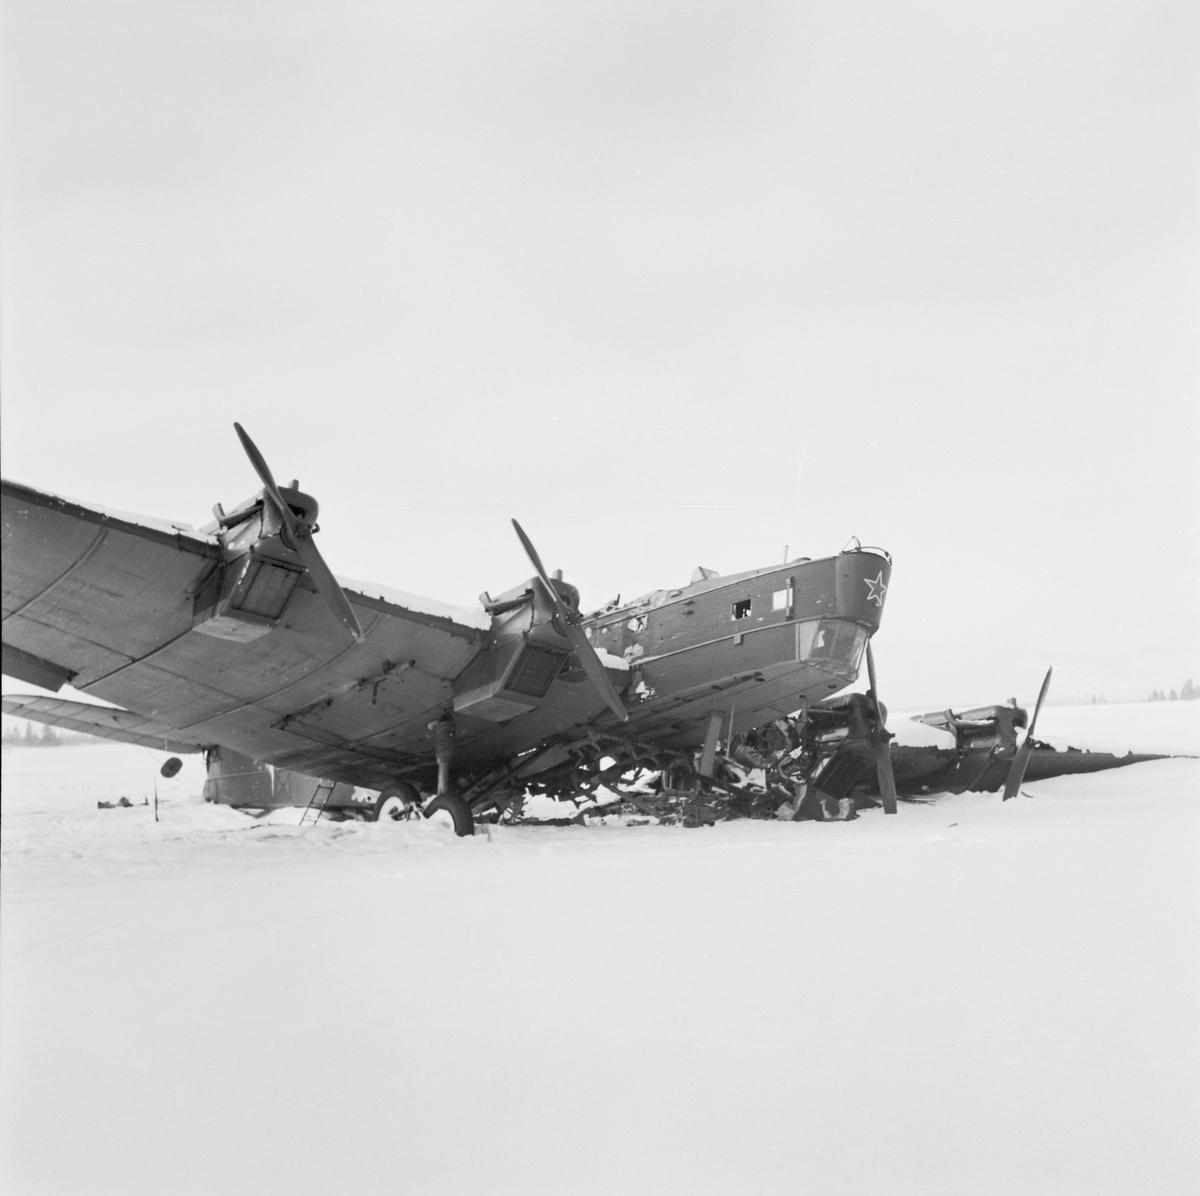 Nedskjutet sovjetiskt bombflygplan TB-3 märkt nummer 22198 vid Svenska frivilligkåren i Finland, F 19. Vy snett framifrån.